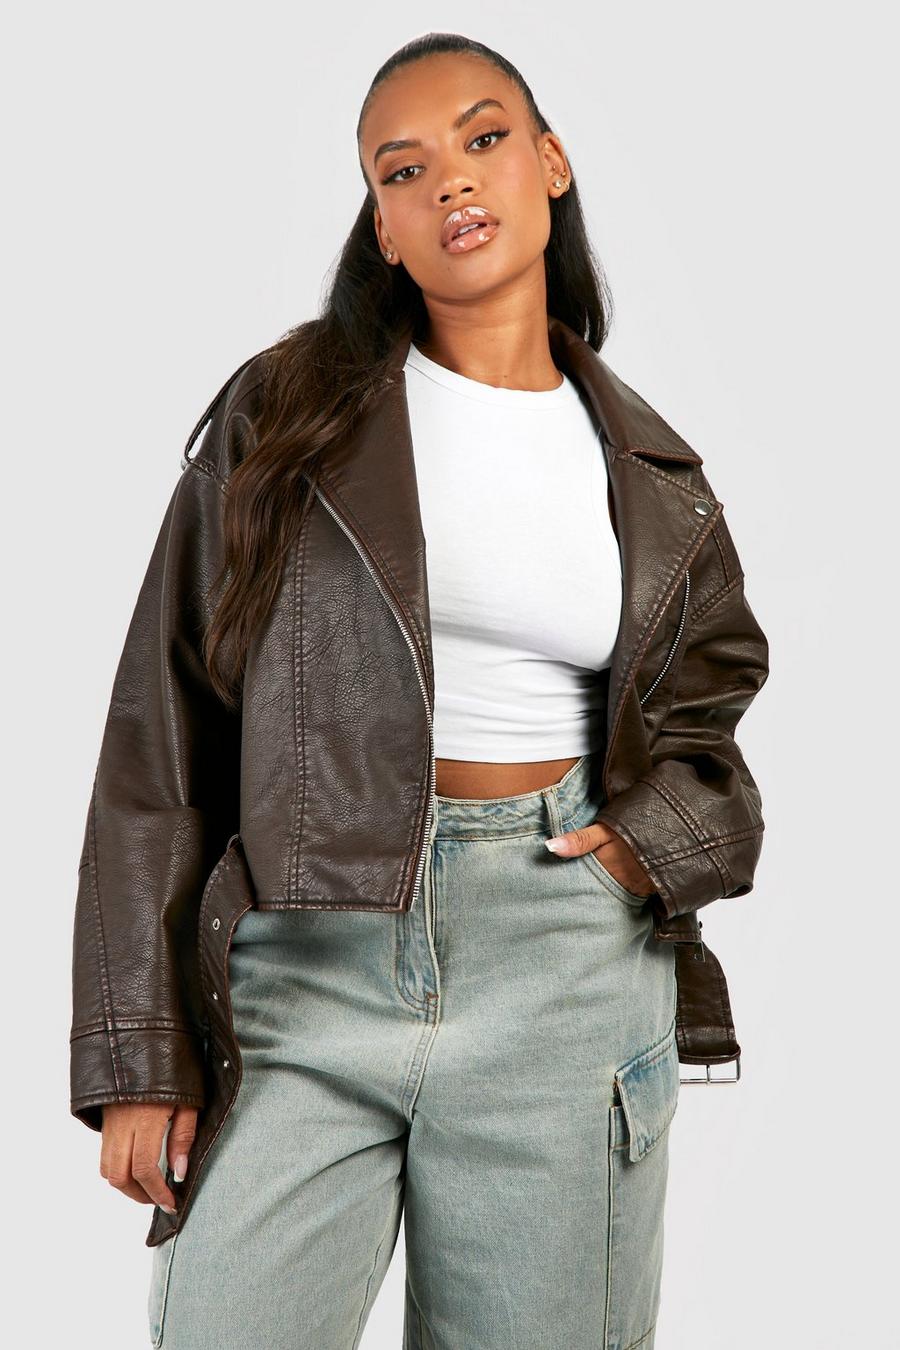 Yubnlvae Cropped Jacket Women Plus Size Fashion Leather Jacket